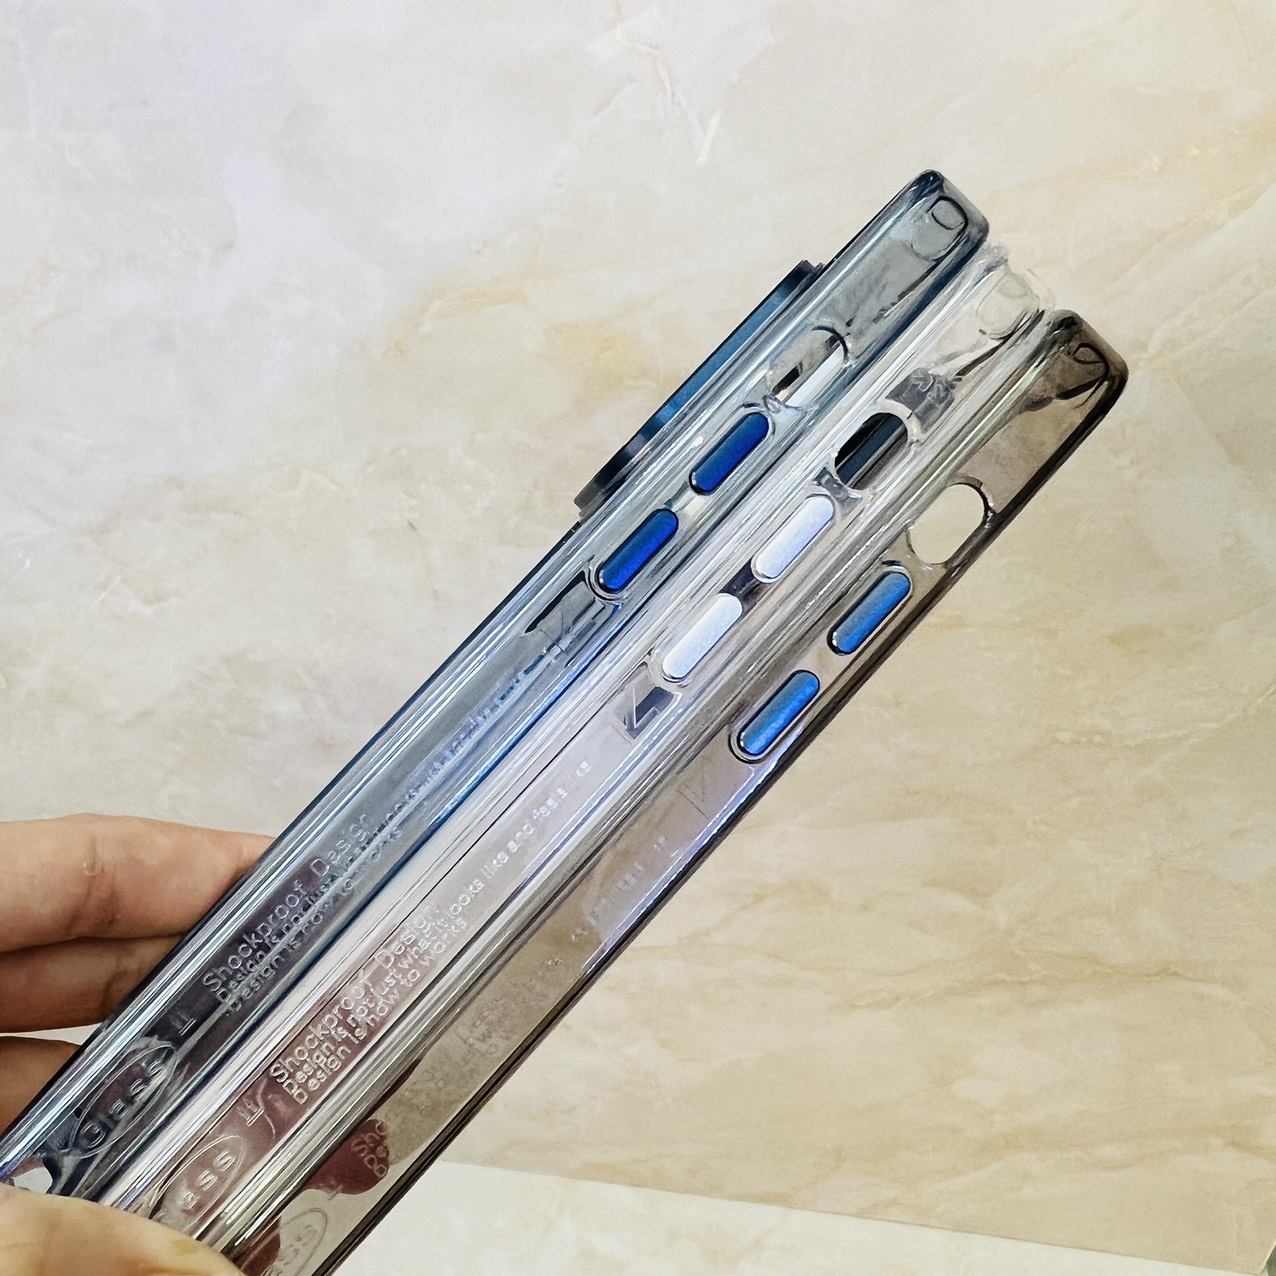 Ốp lưng cho iPhone 15 Pro Max Likgus K-Glass trong suốt- hàng chính hãng